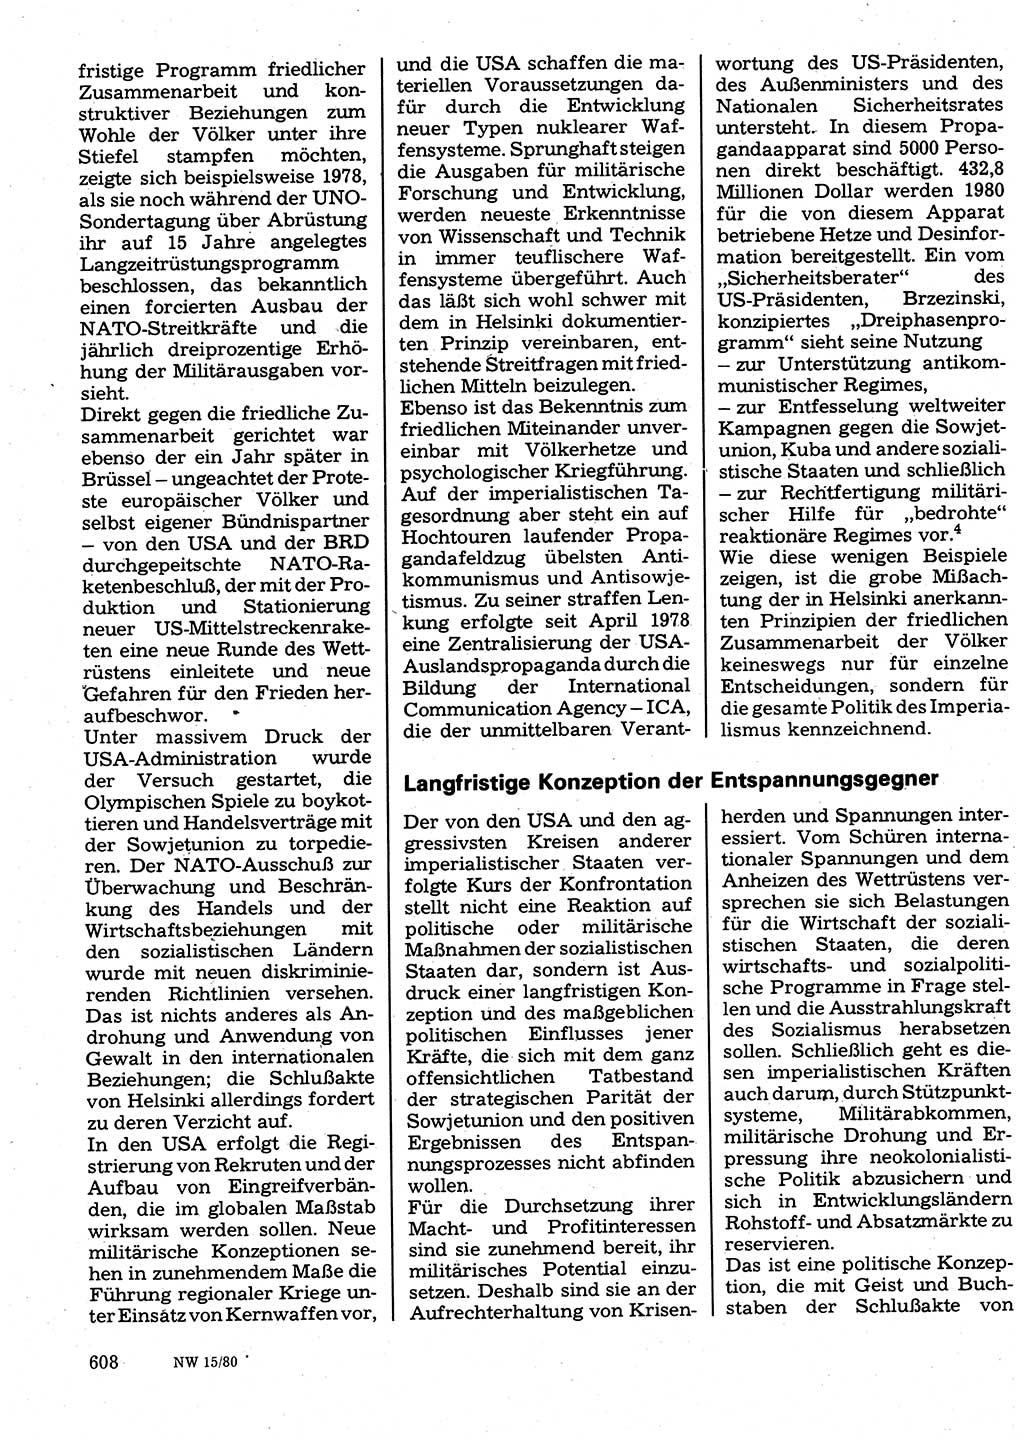 Neuer Weg (NW), Organ des Zentralkomitees (ZK) der SED (Sozialistische Einheitspartei Deutschlands) für Fragen des Parteilebens, 35. Jahrgang [Deutsche Demokratische Republik (DDR)] 1980, Seite 608 (NW ZK SED DDR 1980, S. 608)